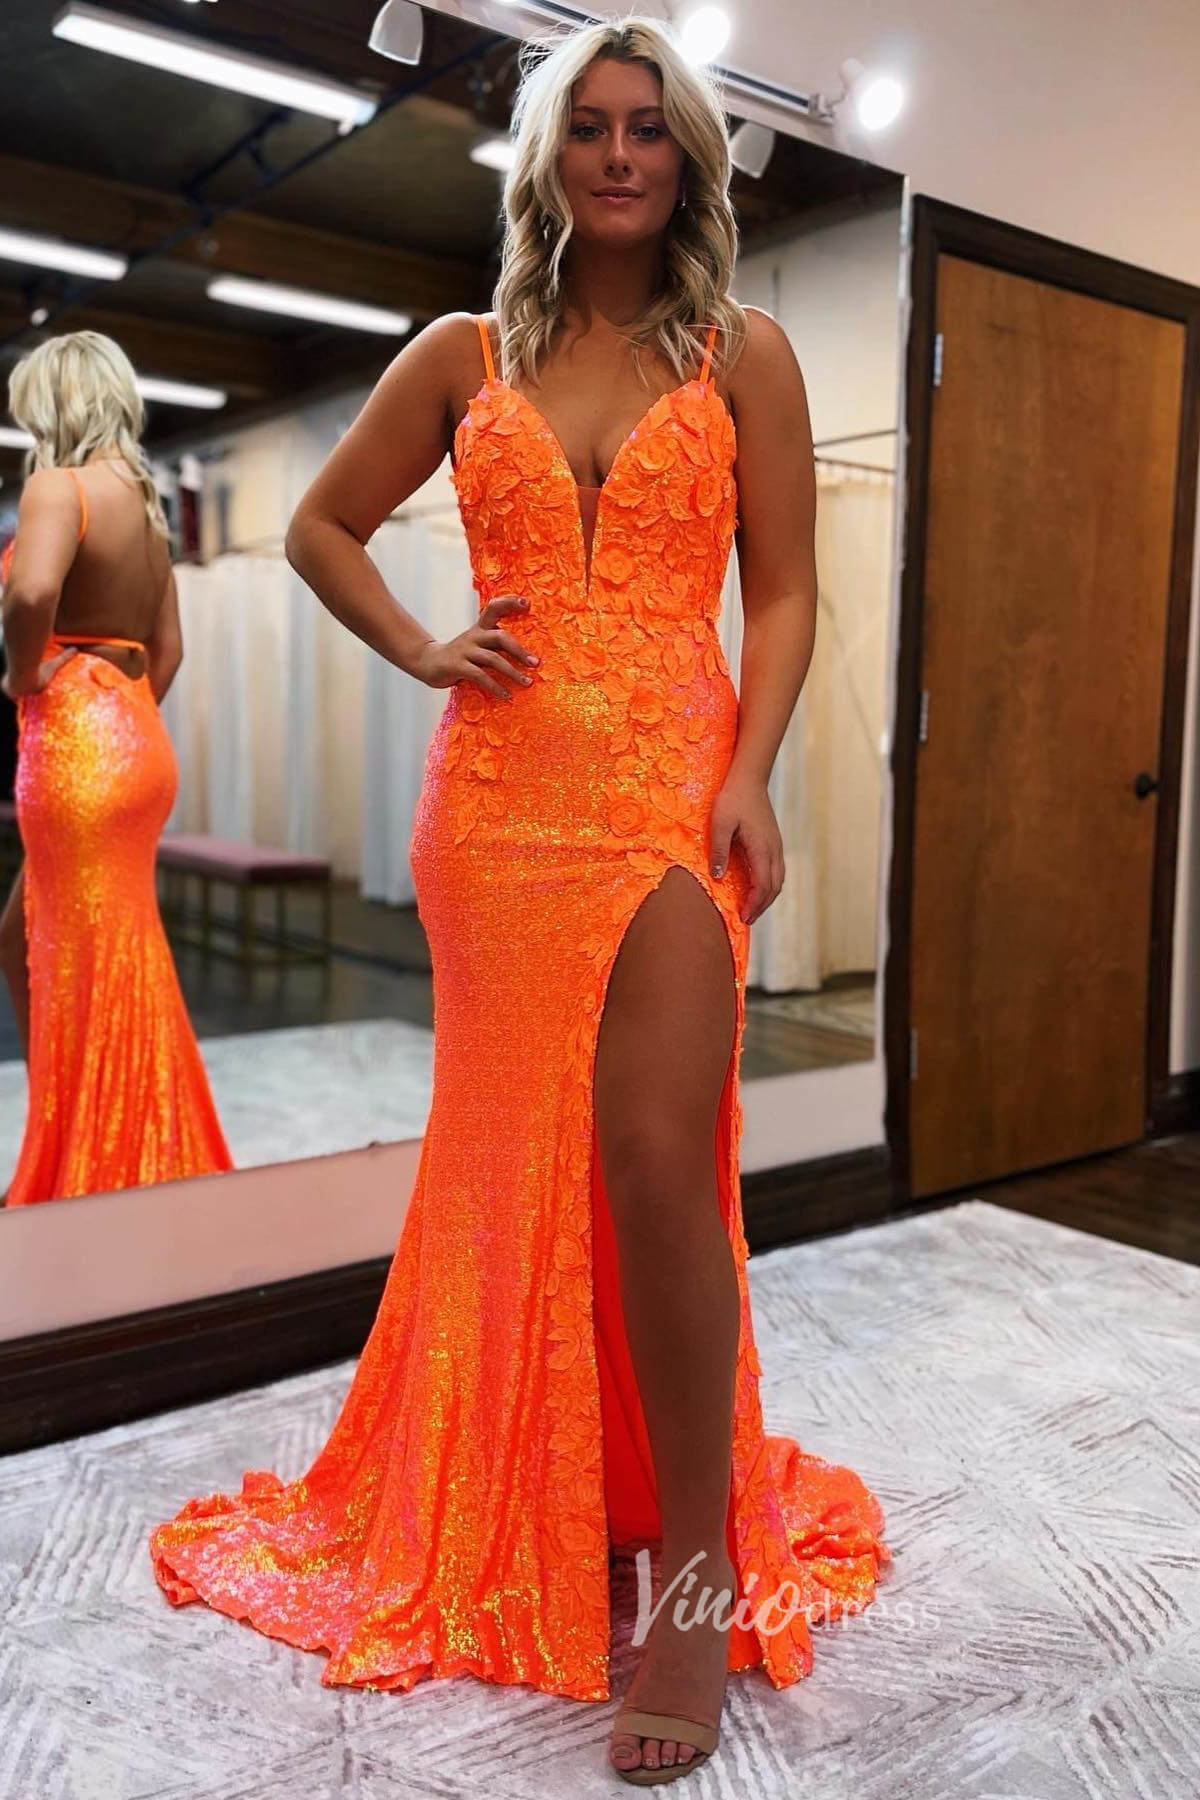 neon orange prom dress